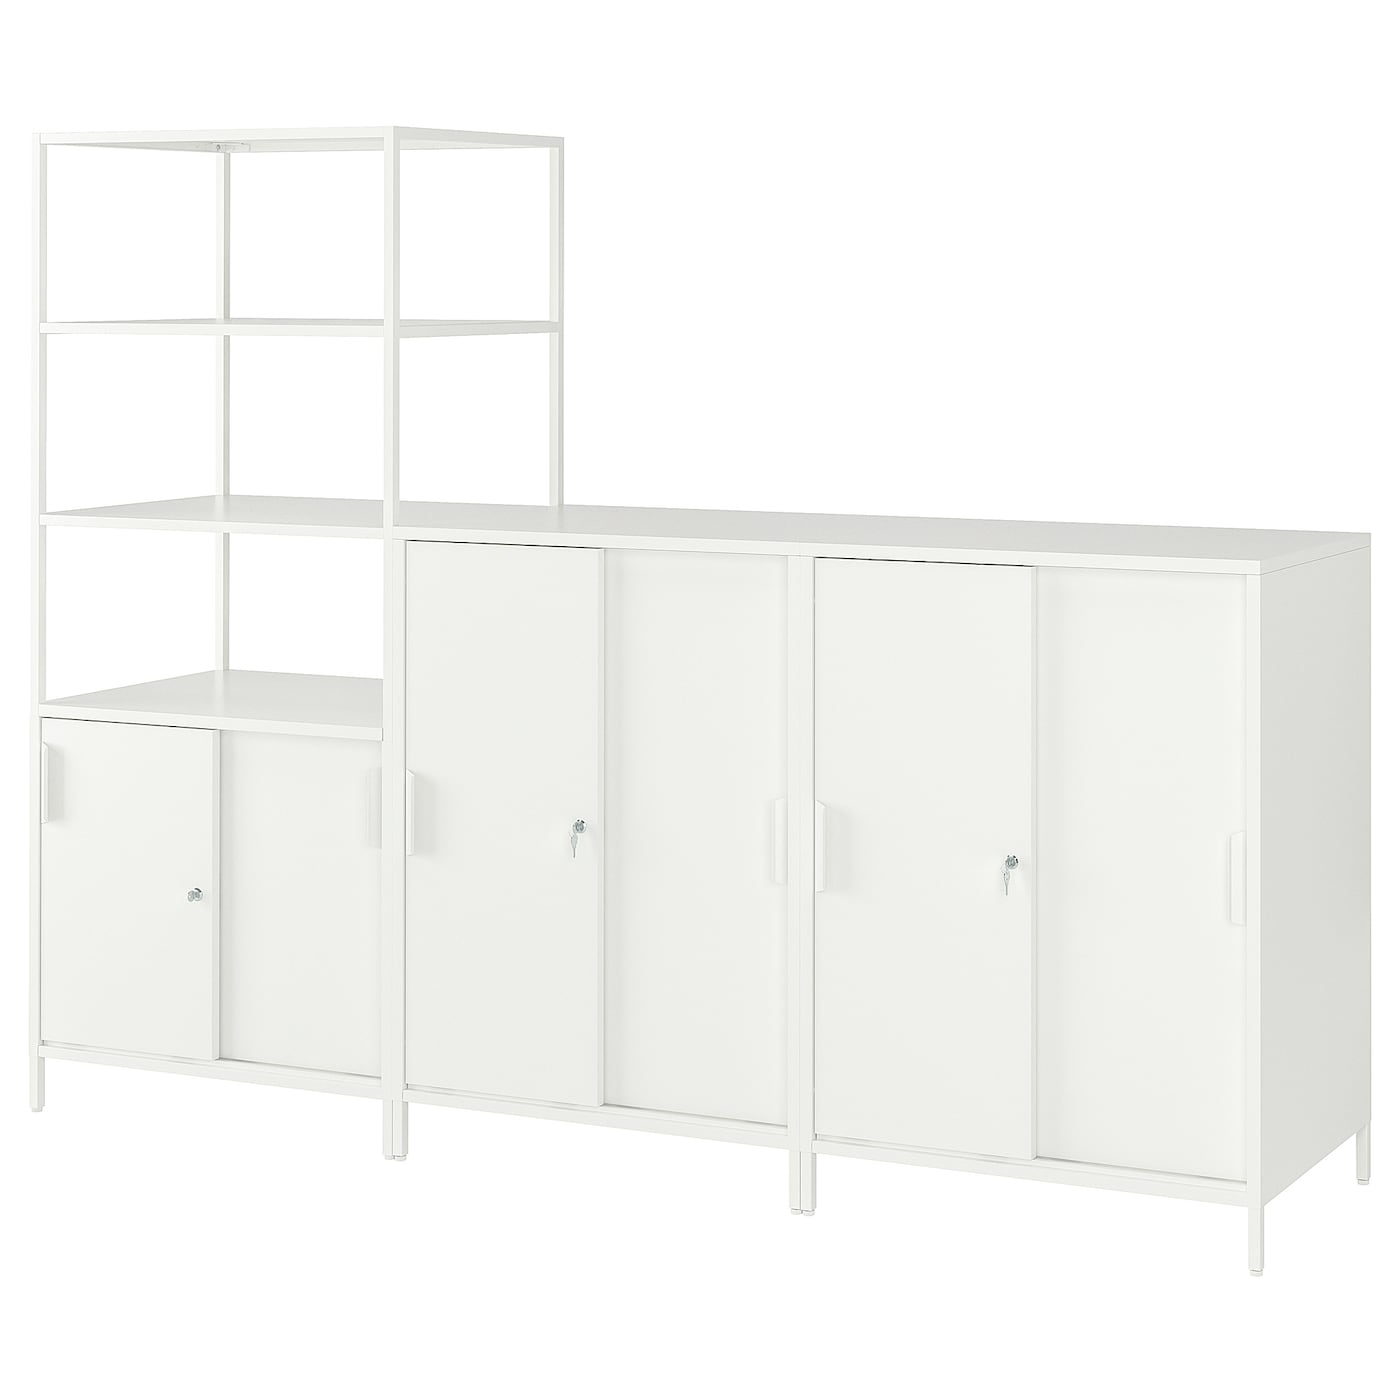 Шкаф - TROTTEN IKEA/ ТРОТТЕН ИКЕА,  240х180 см, белый